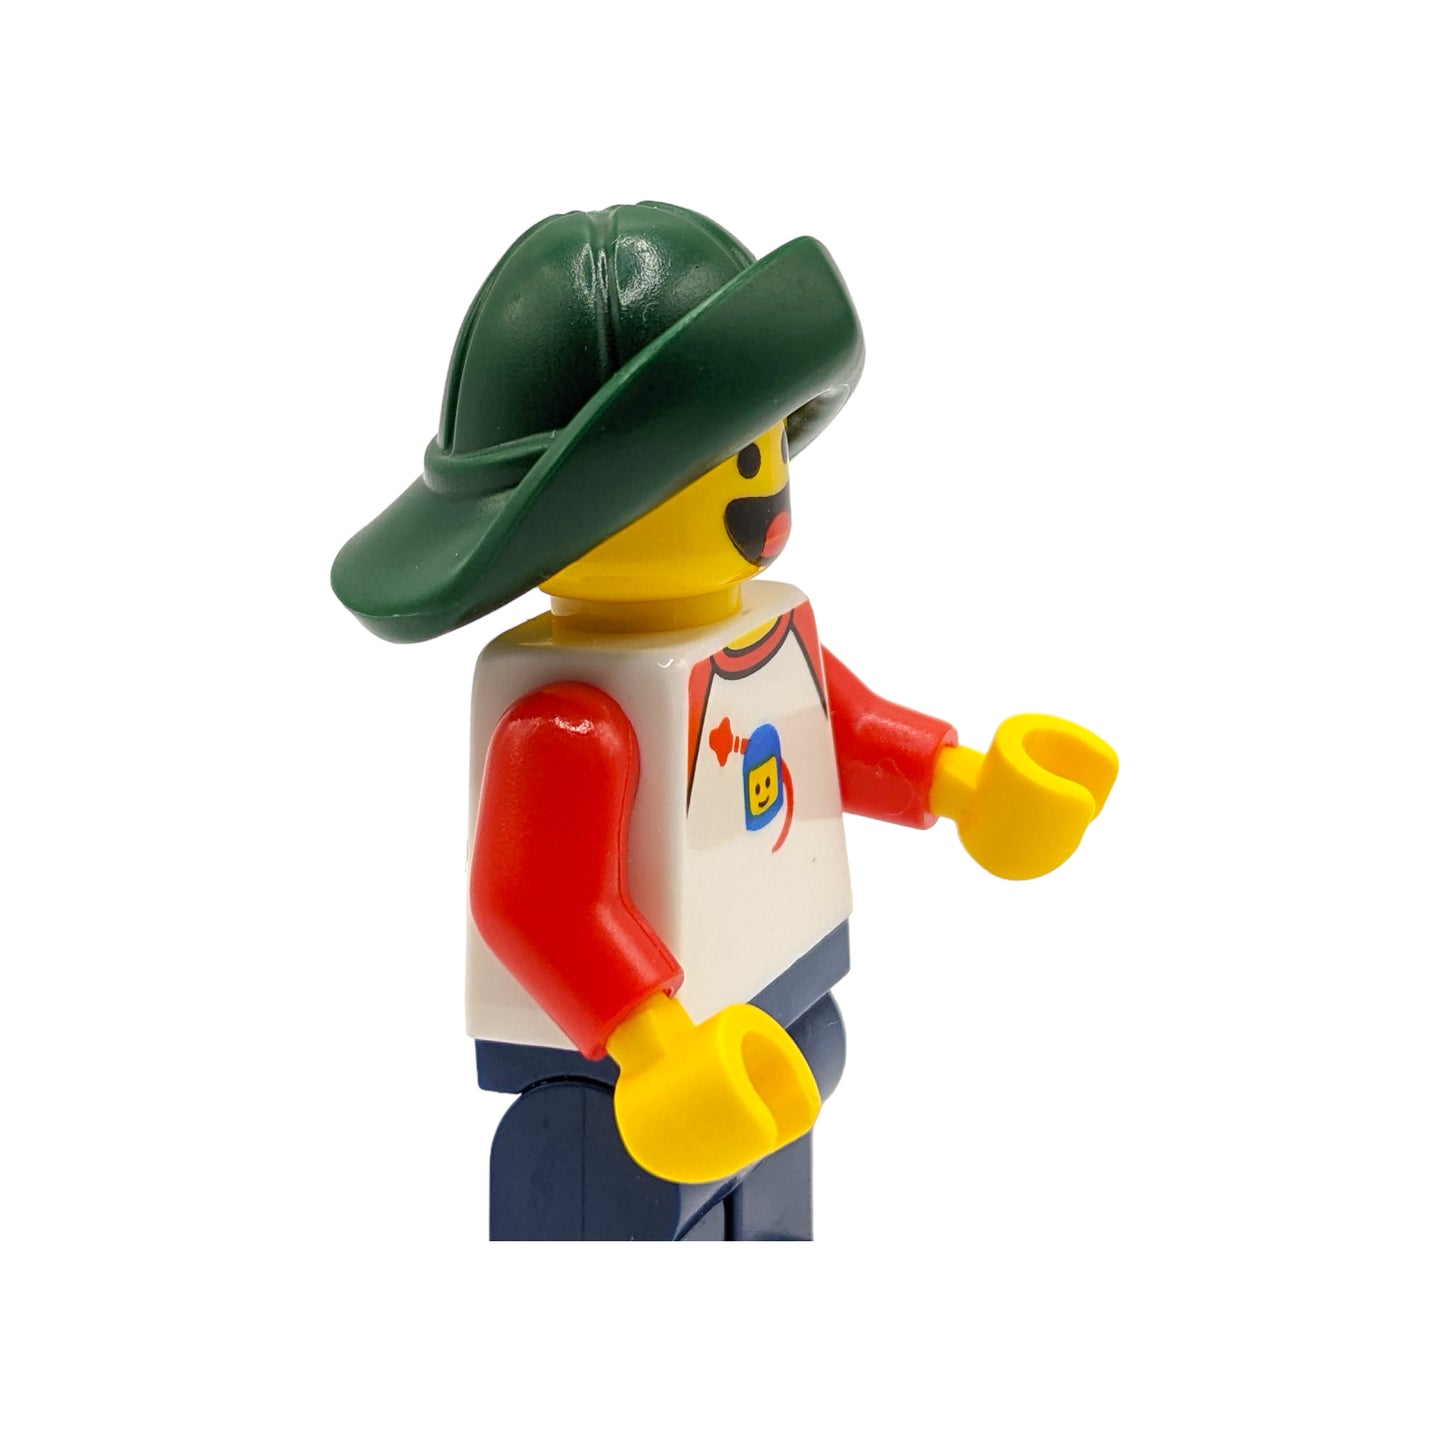 LEGO Hut - Fischerhut Regenmütze in Dark Green